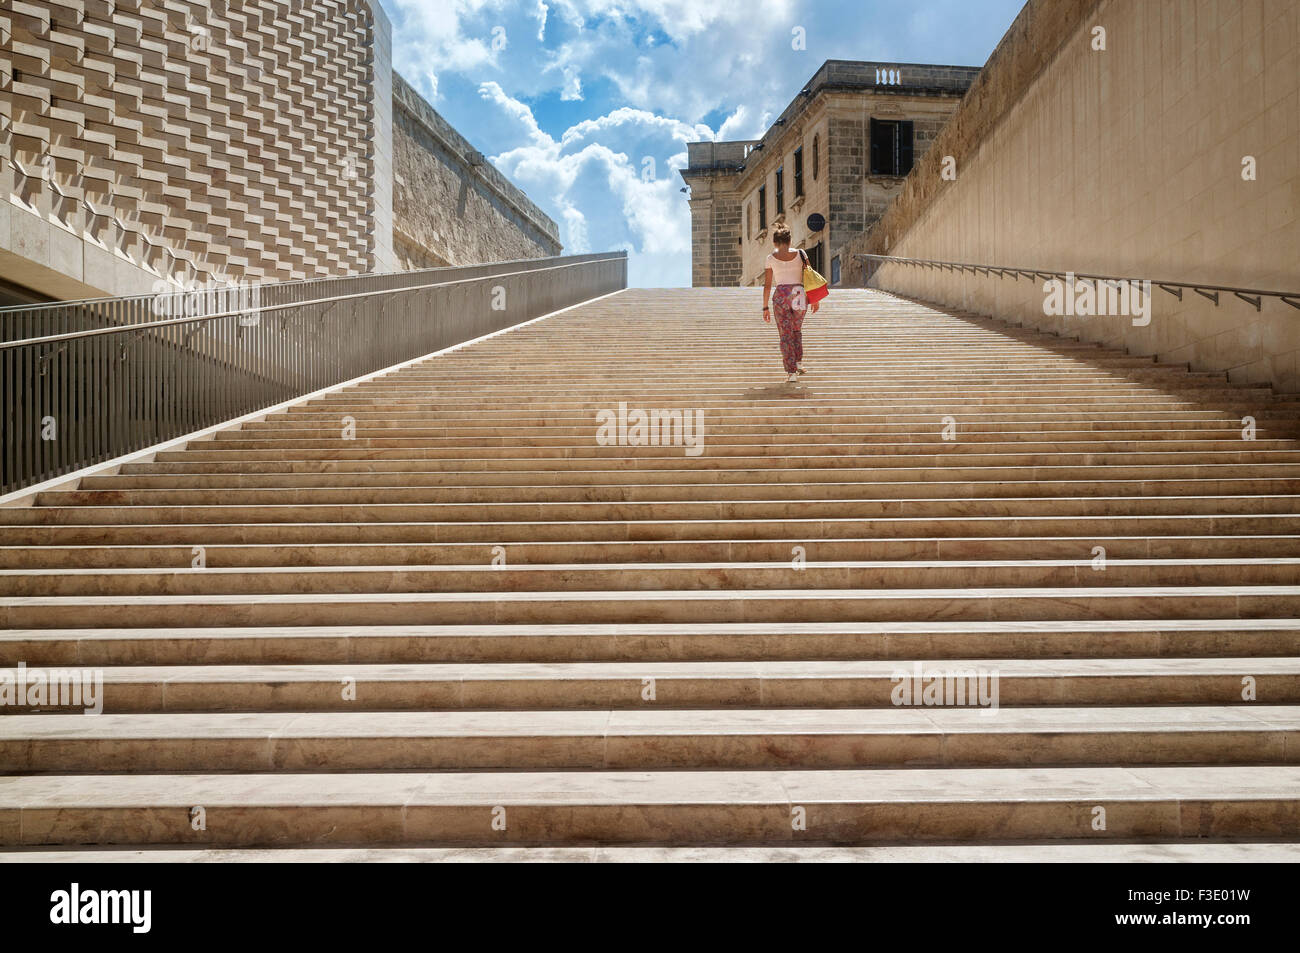 Los pasos que forman parte de la Valeta el quinto proyecto de la puerta de la ciudad construida entre 2011 y 2014, con diseño de Renzo Piano. Foto de stock